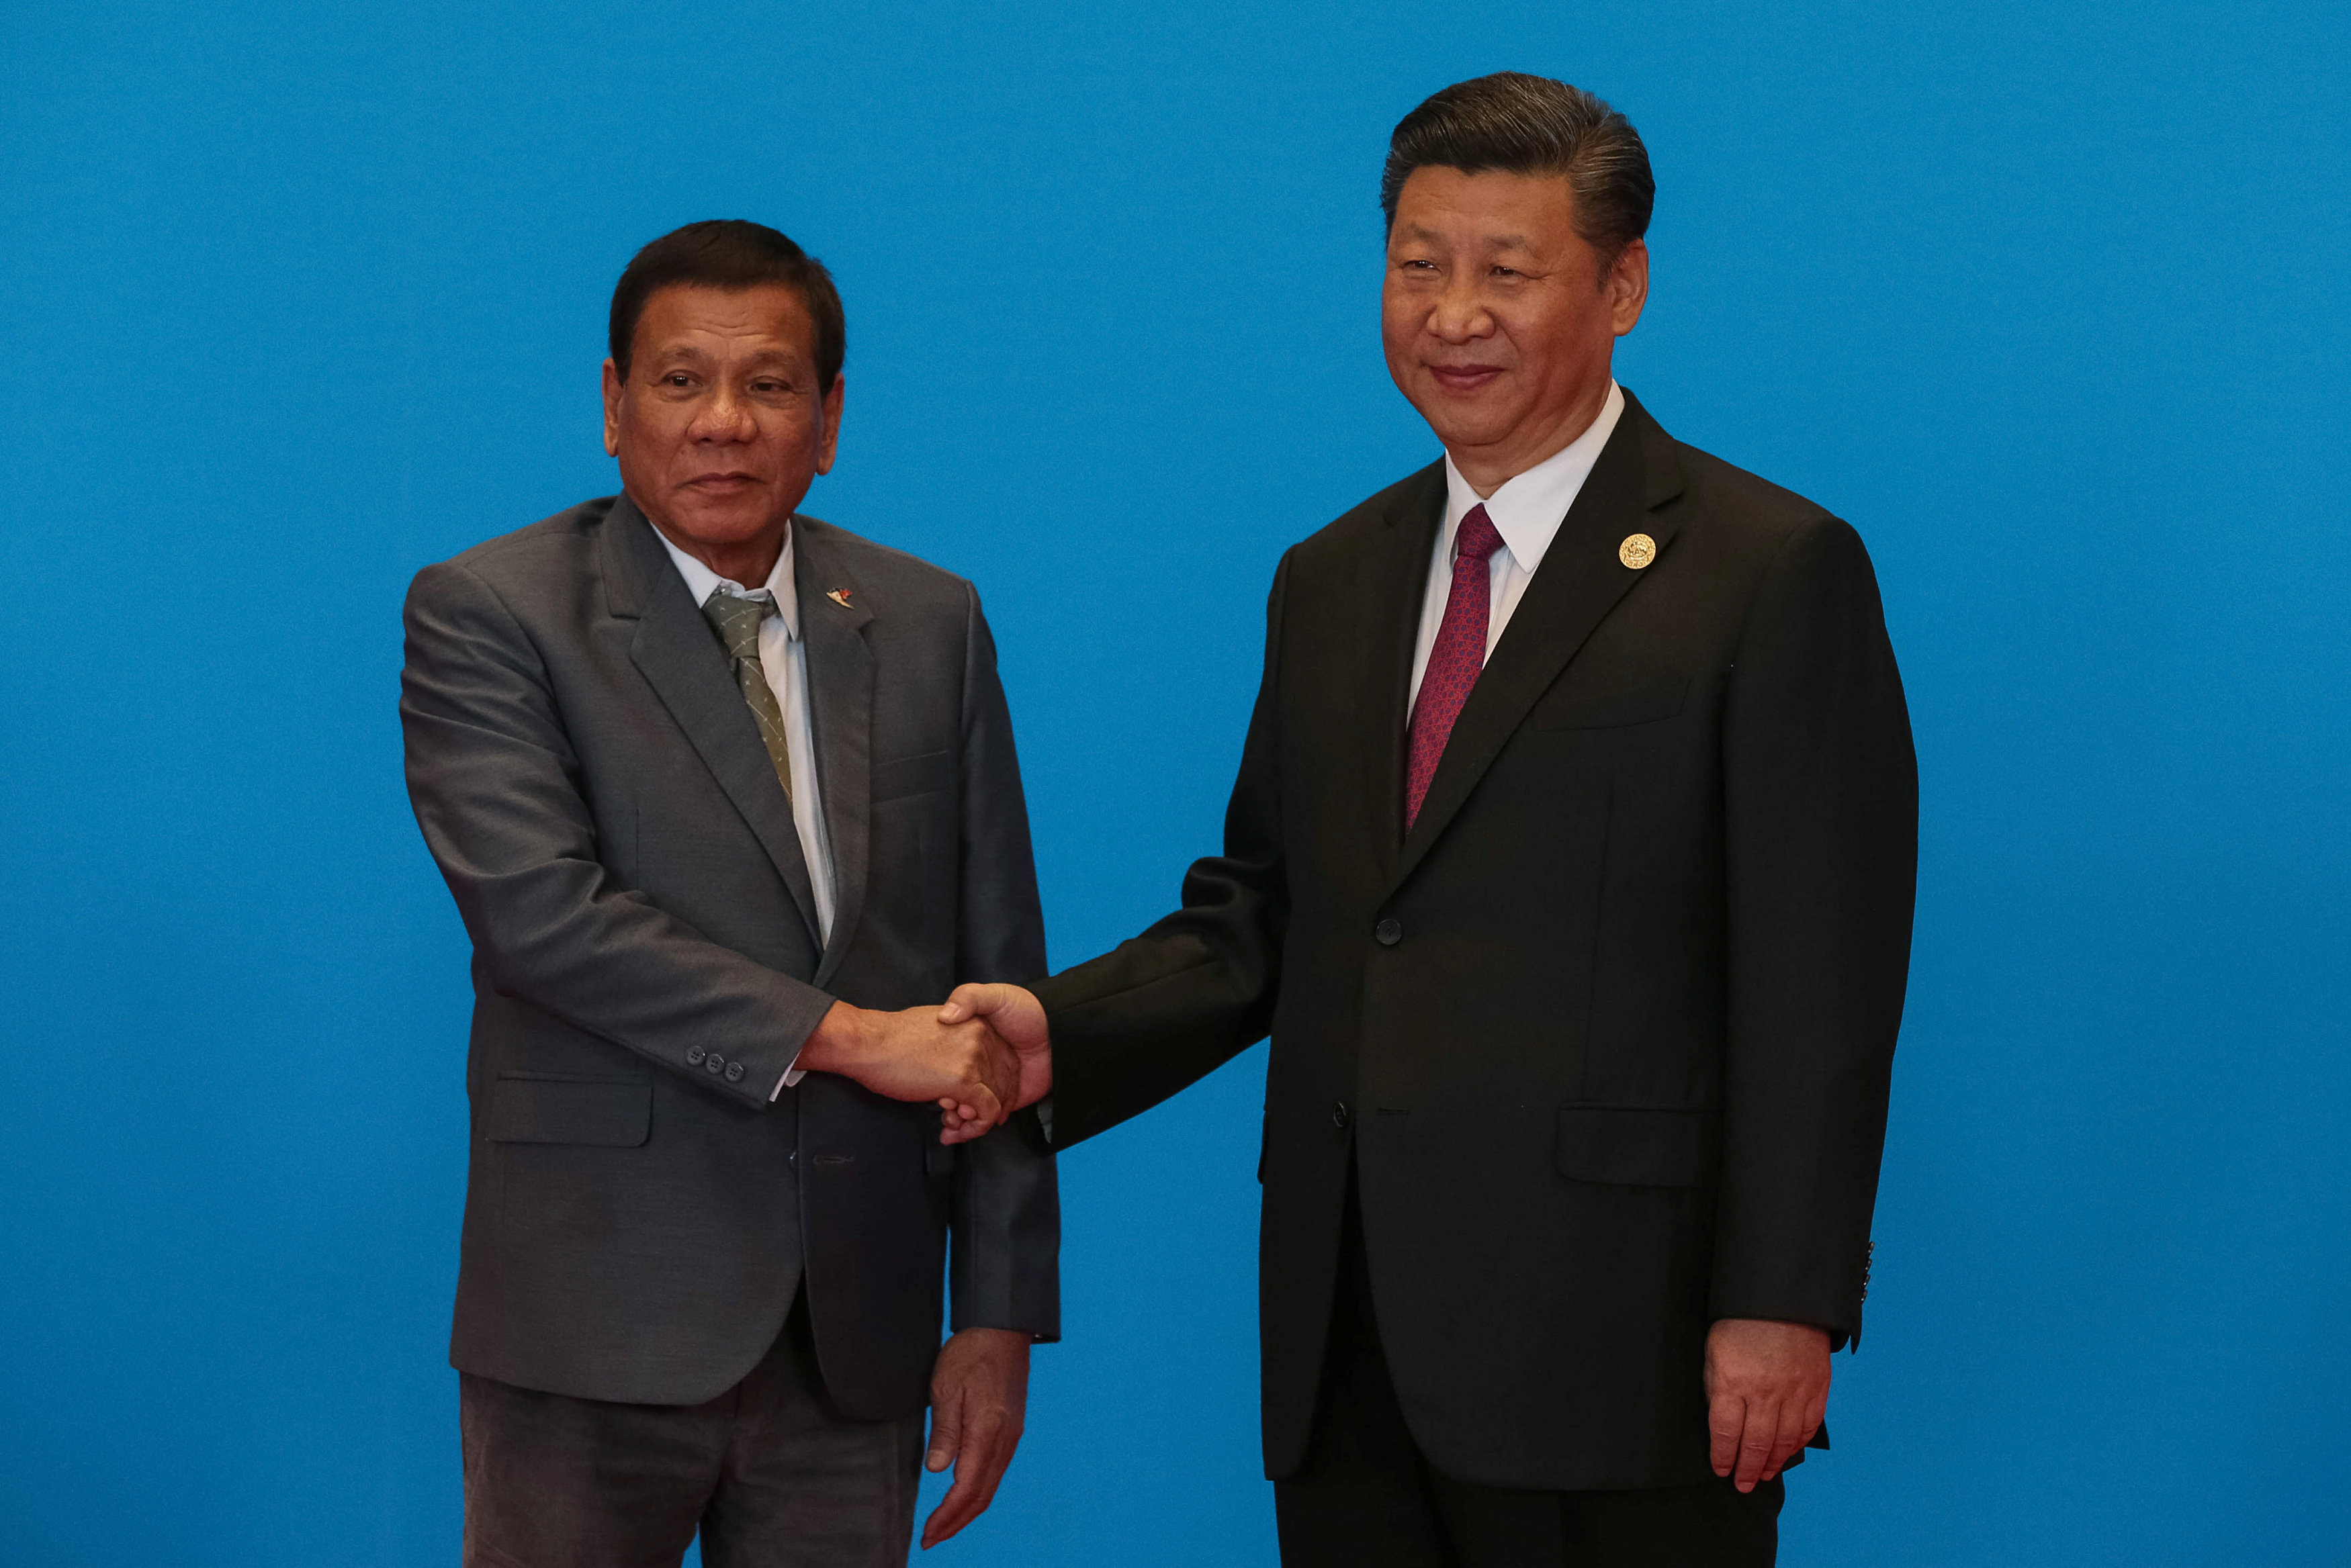 الرئيس الصيني إكسي جينبينغ يصافح رئيسة الفلبين رودريغو دوترت